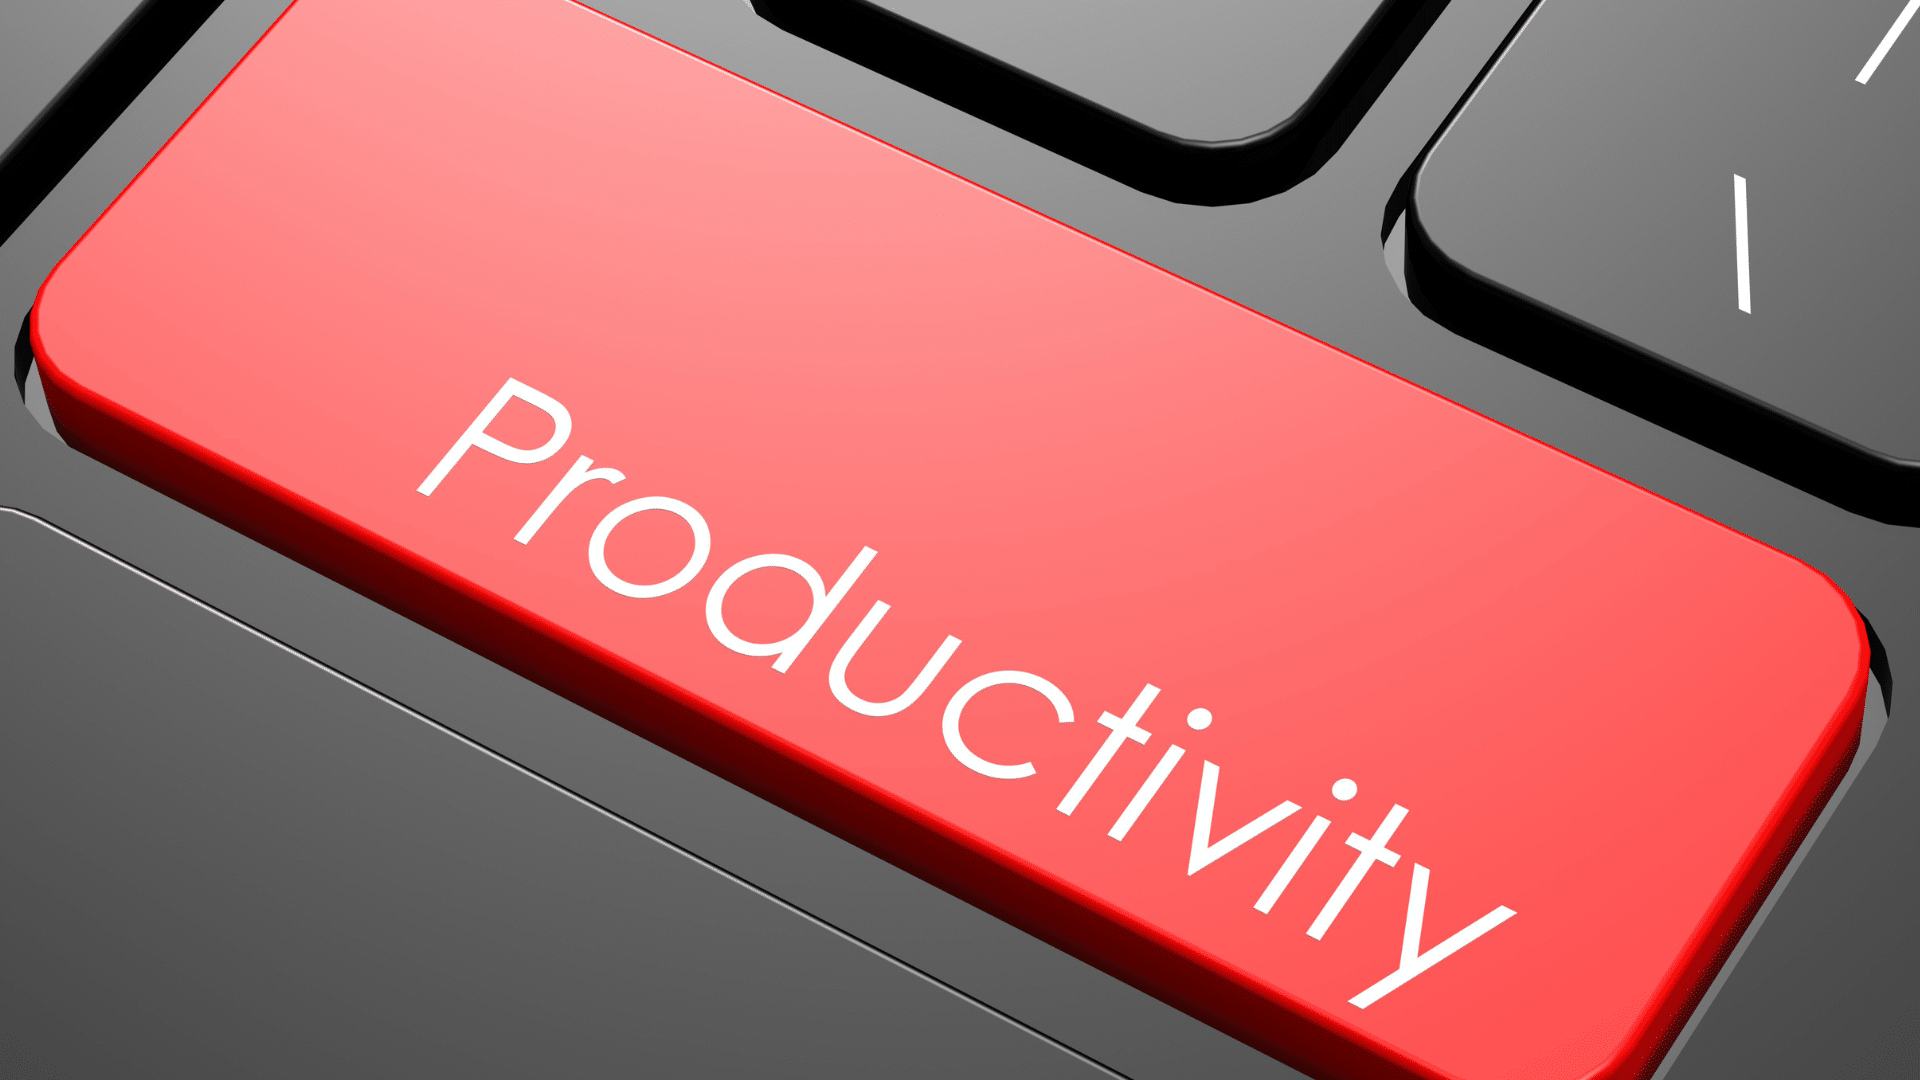 Migliora la tua produttività con Windows 10 Pro